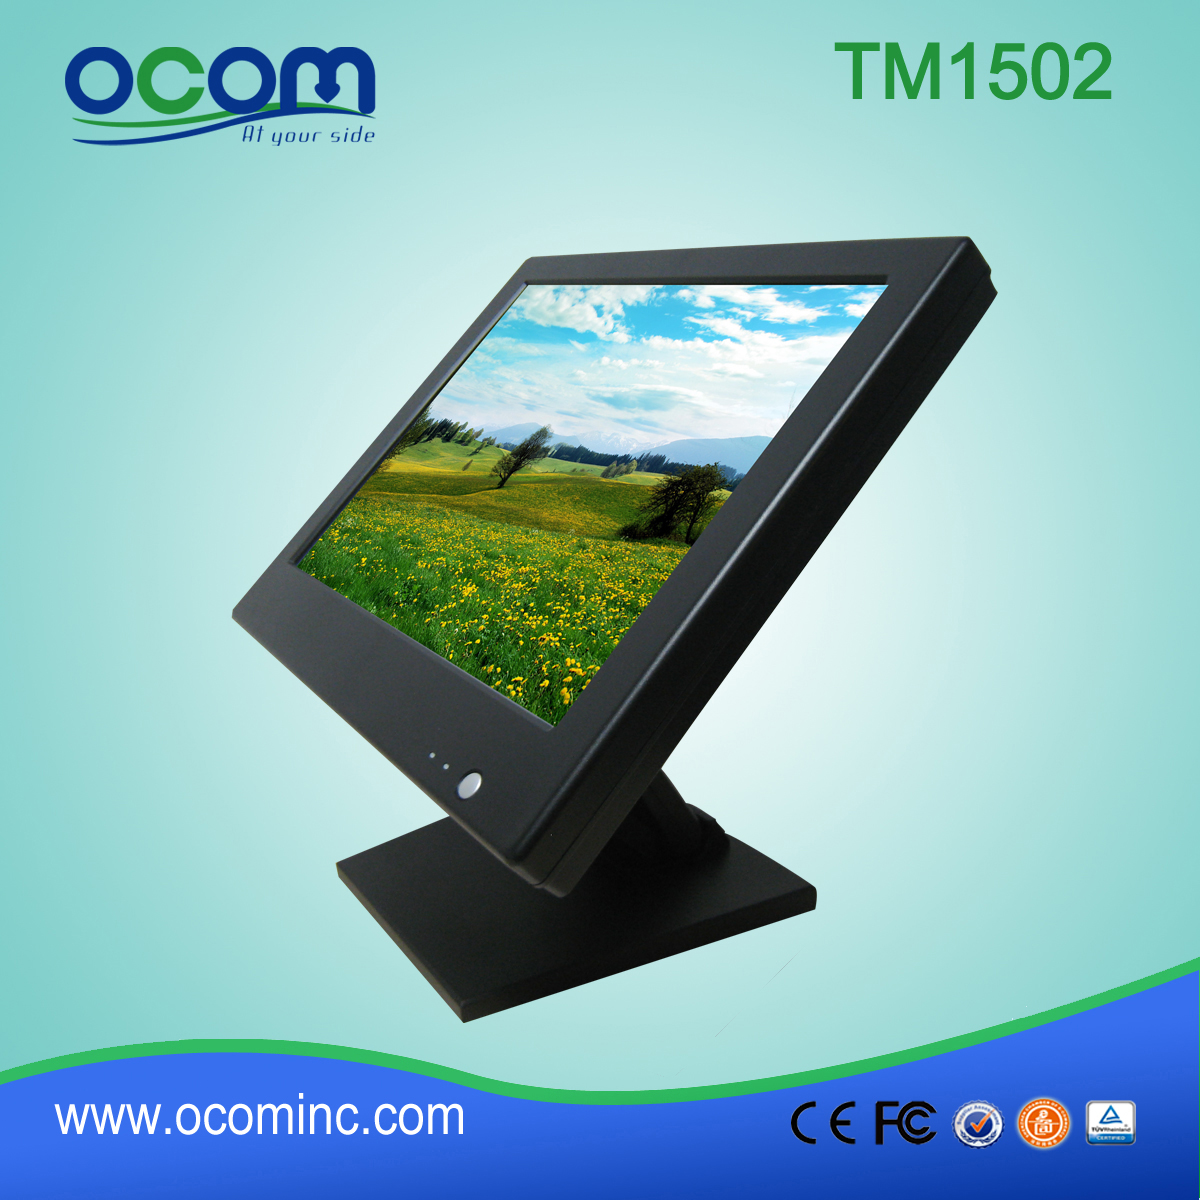 TM1502 12V Capacitive/Resistive VGA LCD Screen Monitor